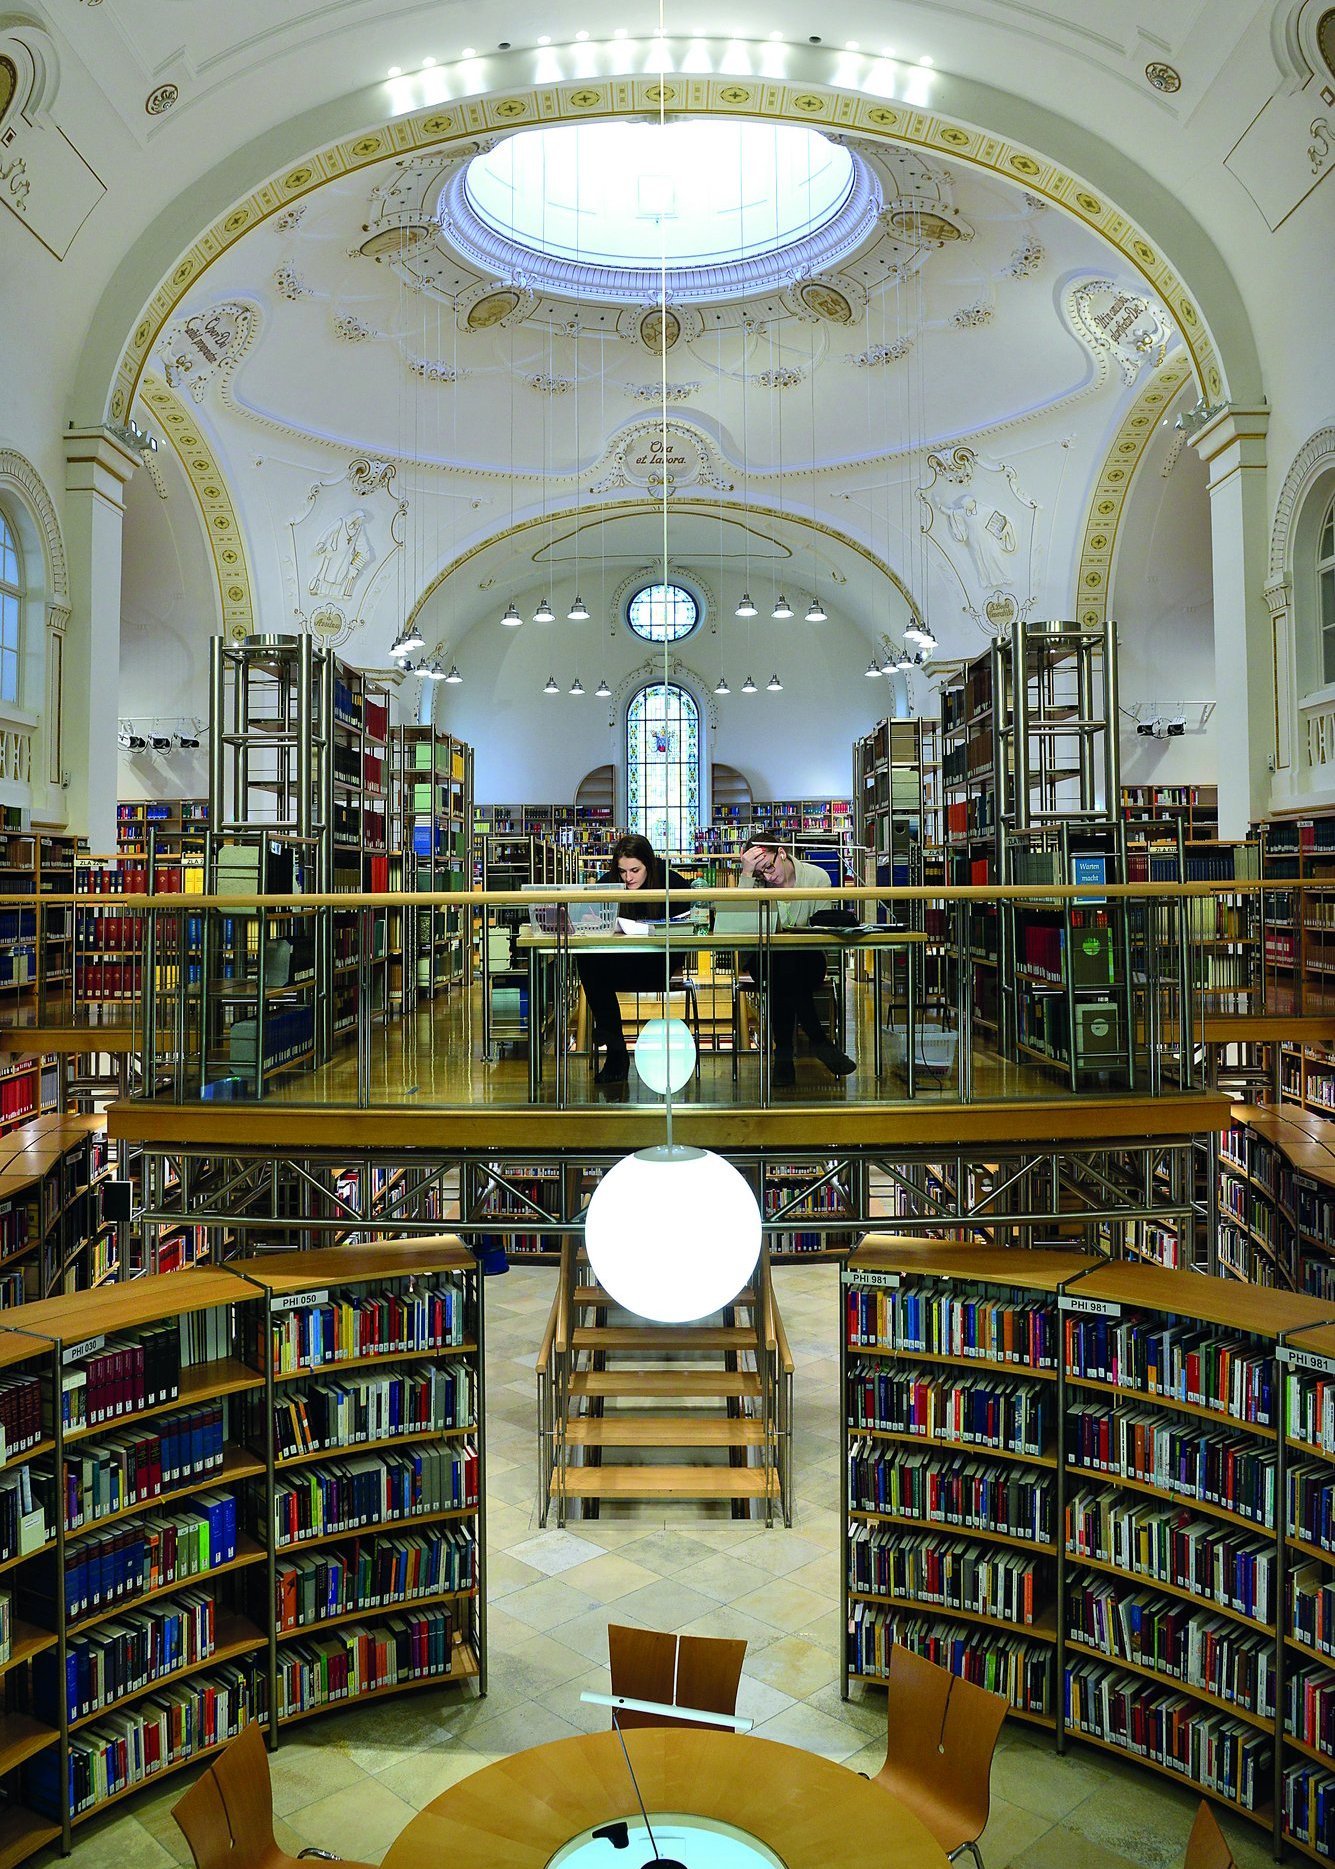 Die Landesbibliothek von innen, der Kuppelsaal mit Fenster im Dach und Bücherregalen